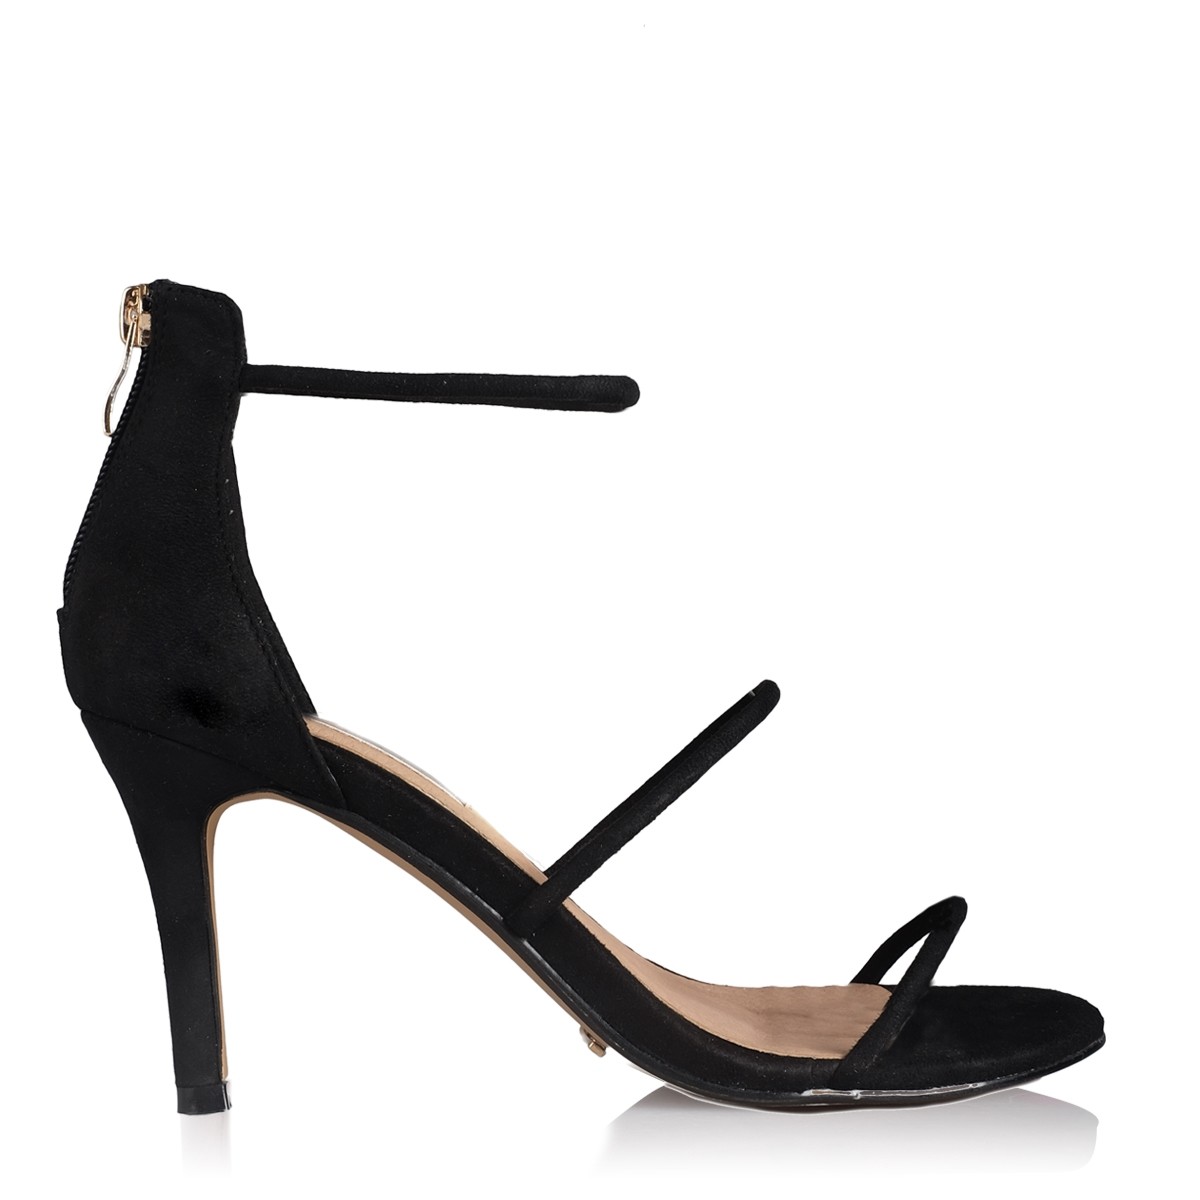 Calis Black Suede by Billini Shoes on Sale | ShoeSales